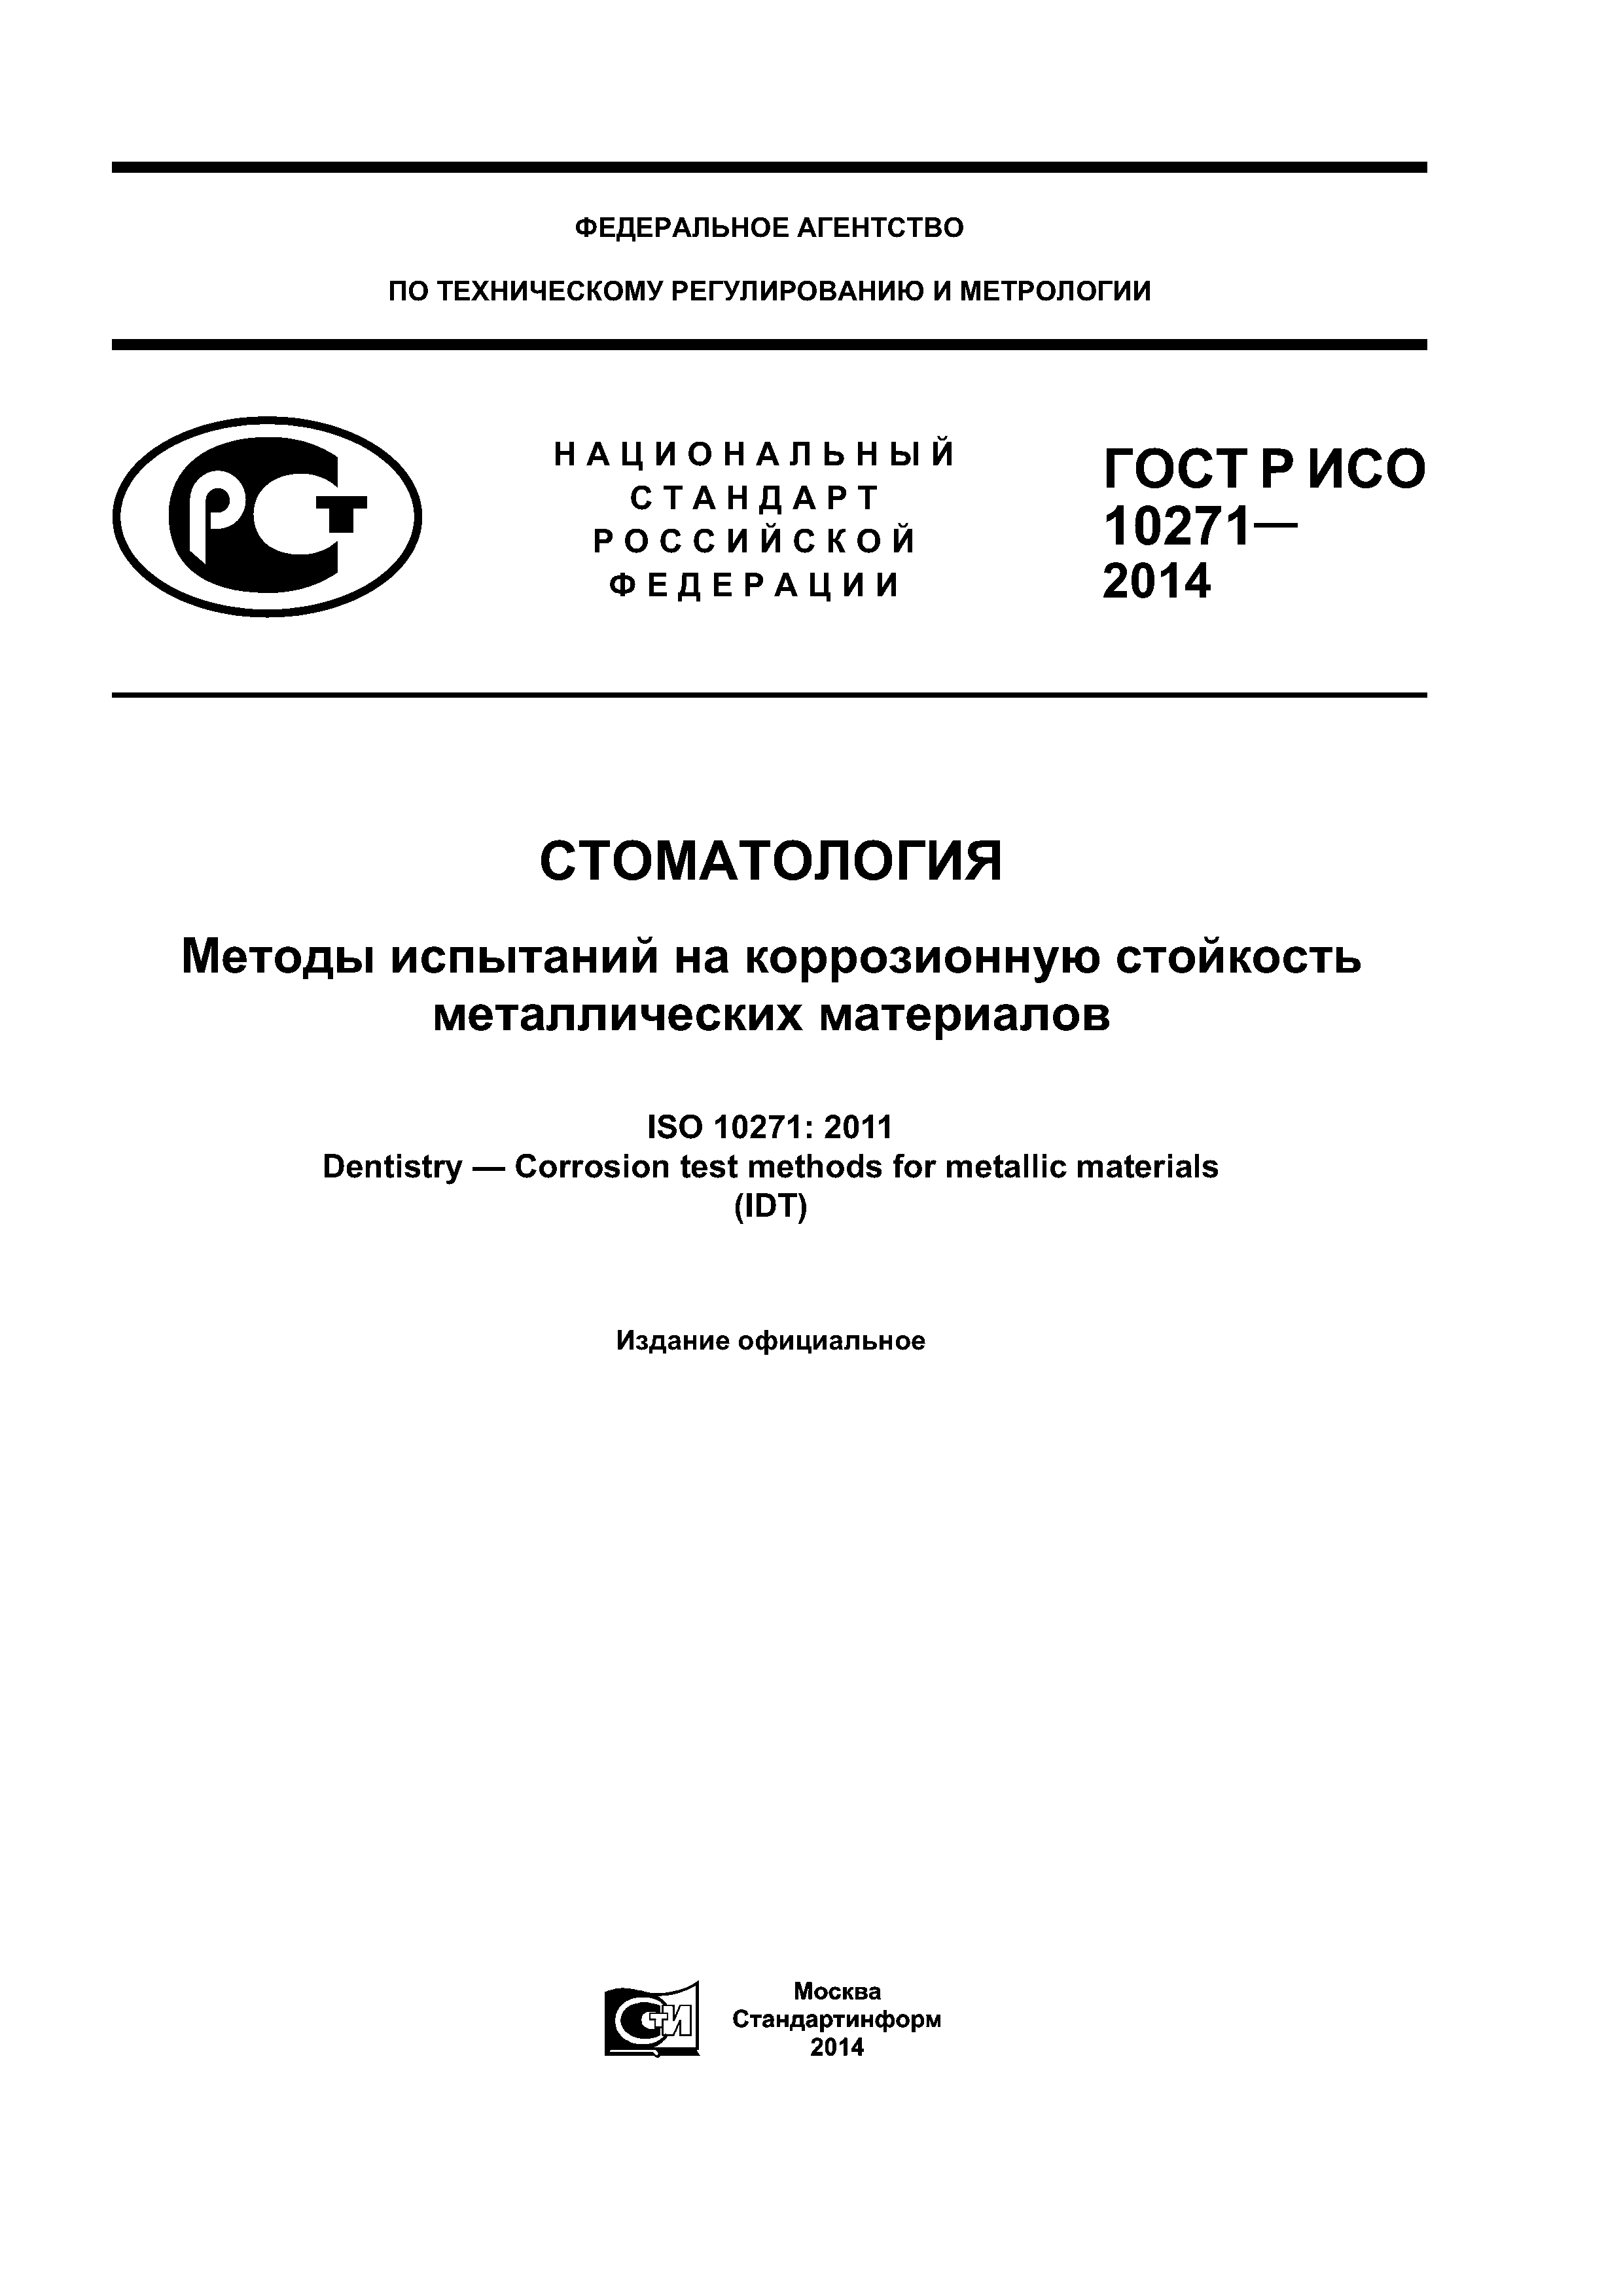 ГОСТ Р ИСО 10271-2014